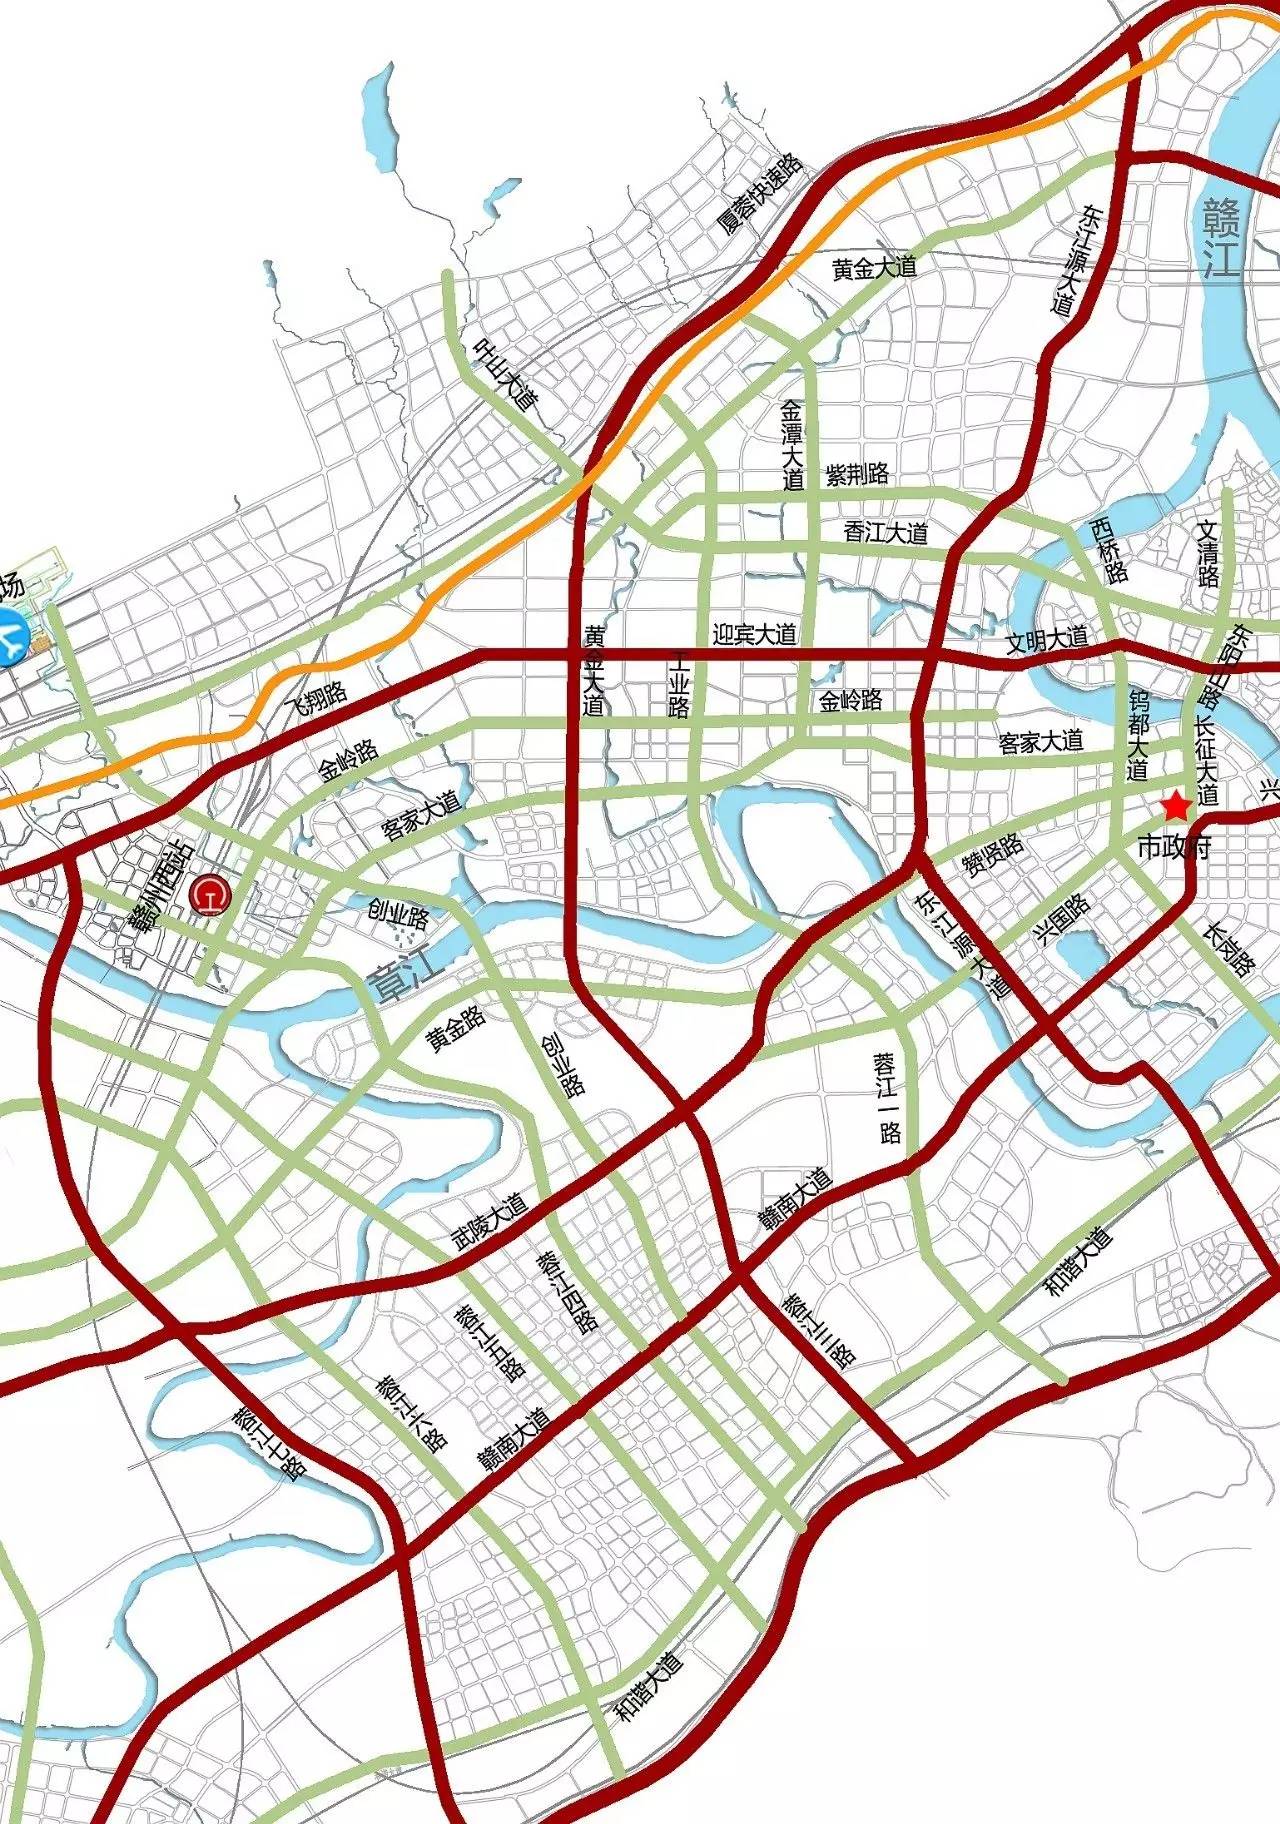 赣州市中心城区快速路网详细规划公布涉及城区300万人快来围观